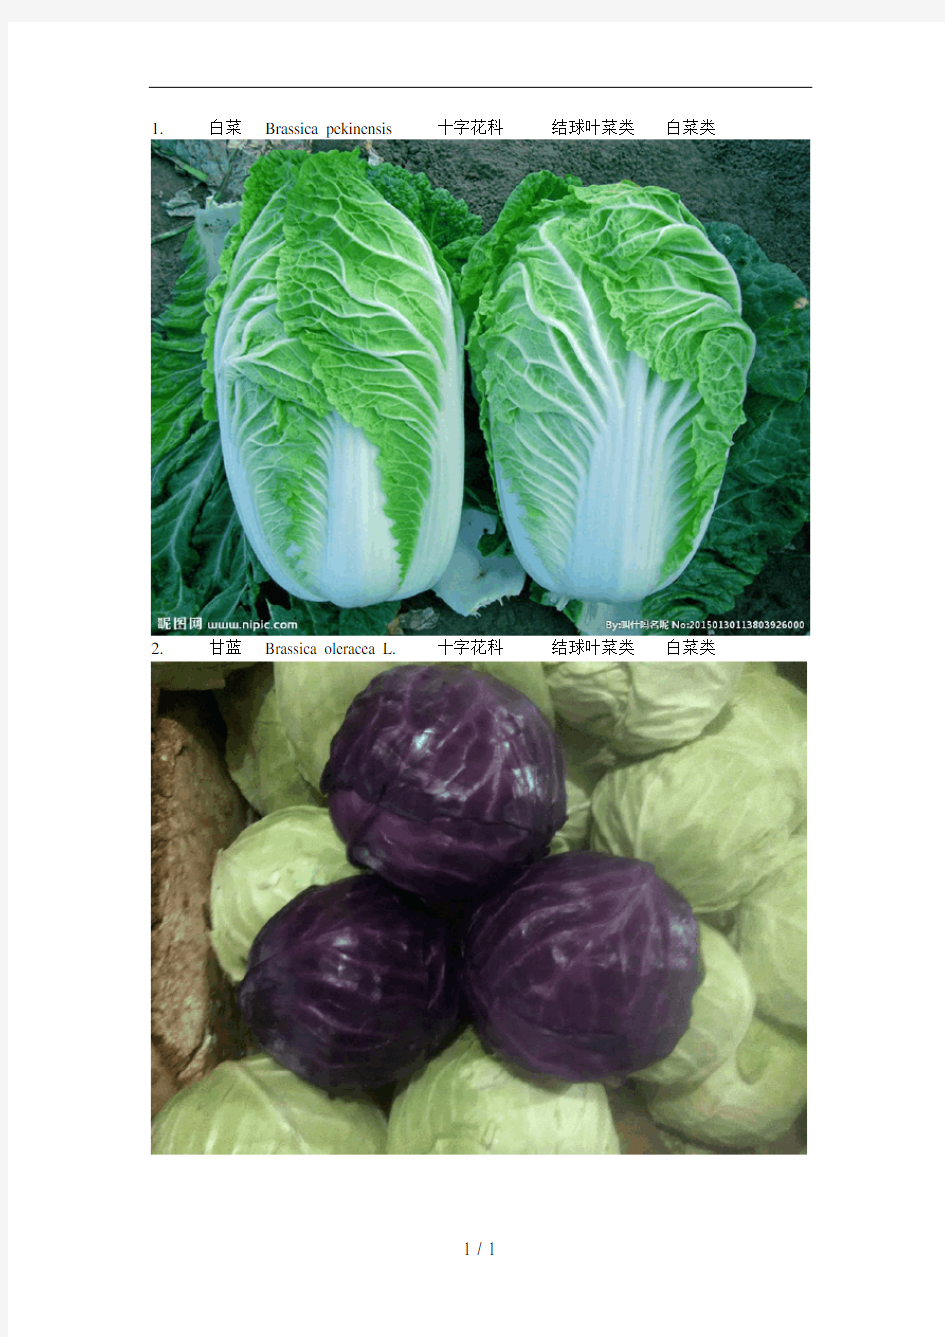 常见蔬菜与分类-配图